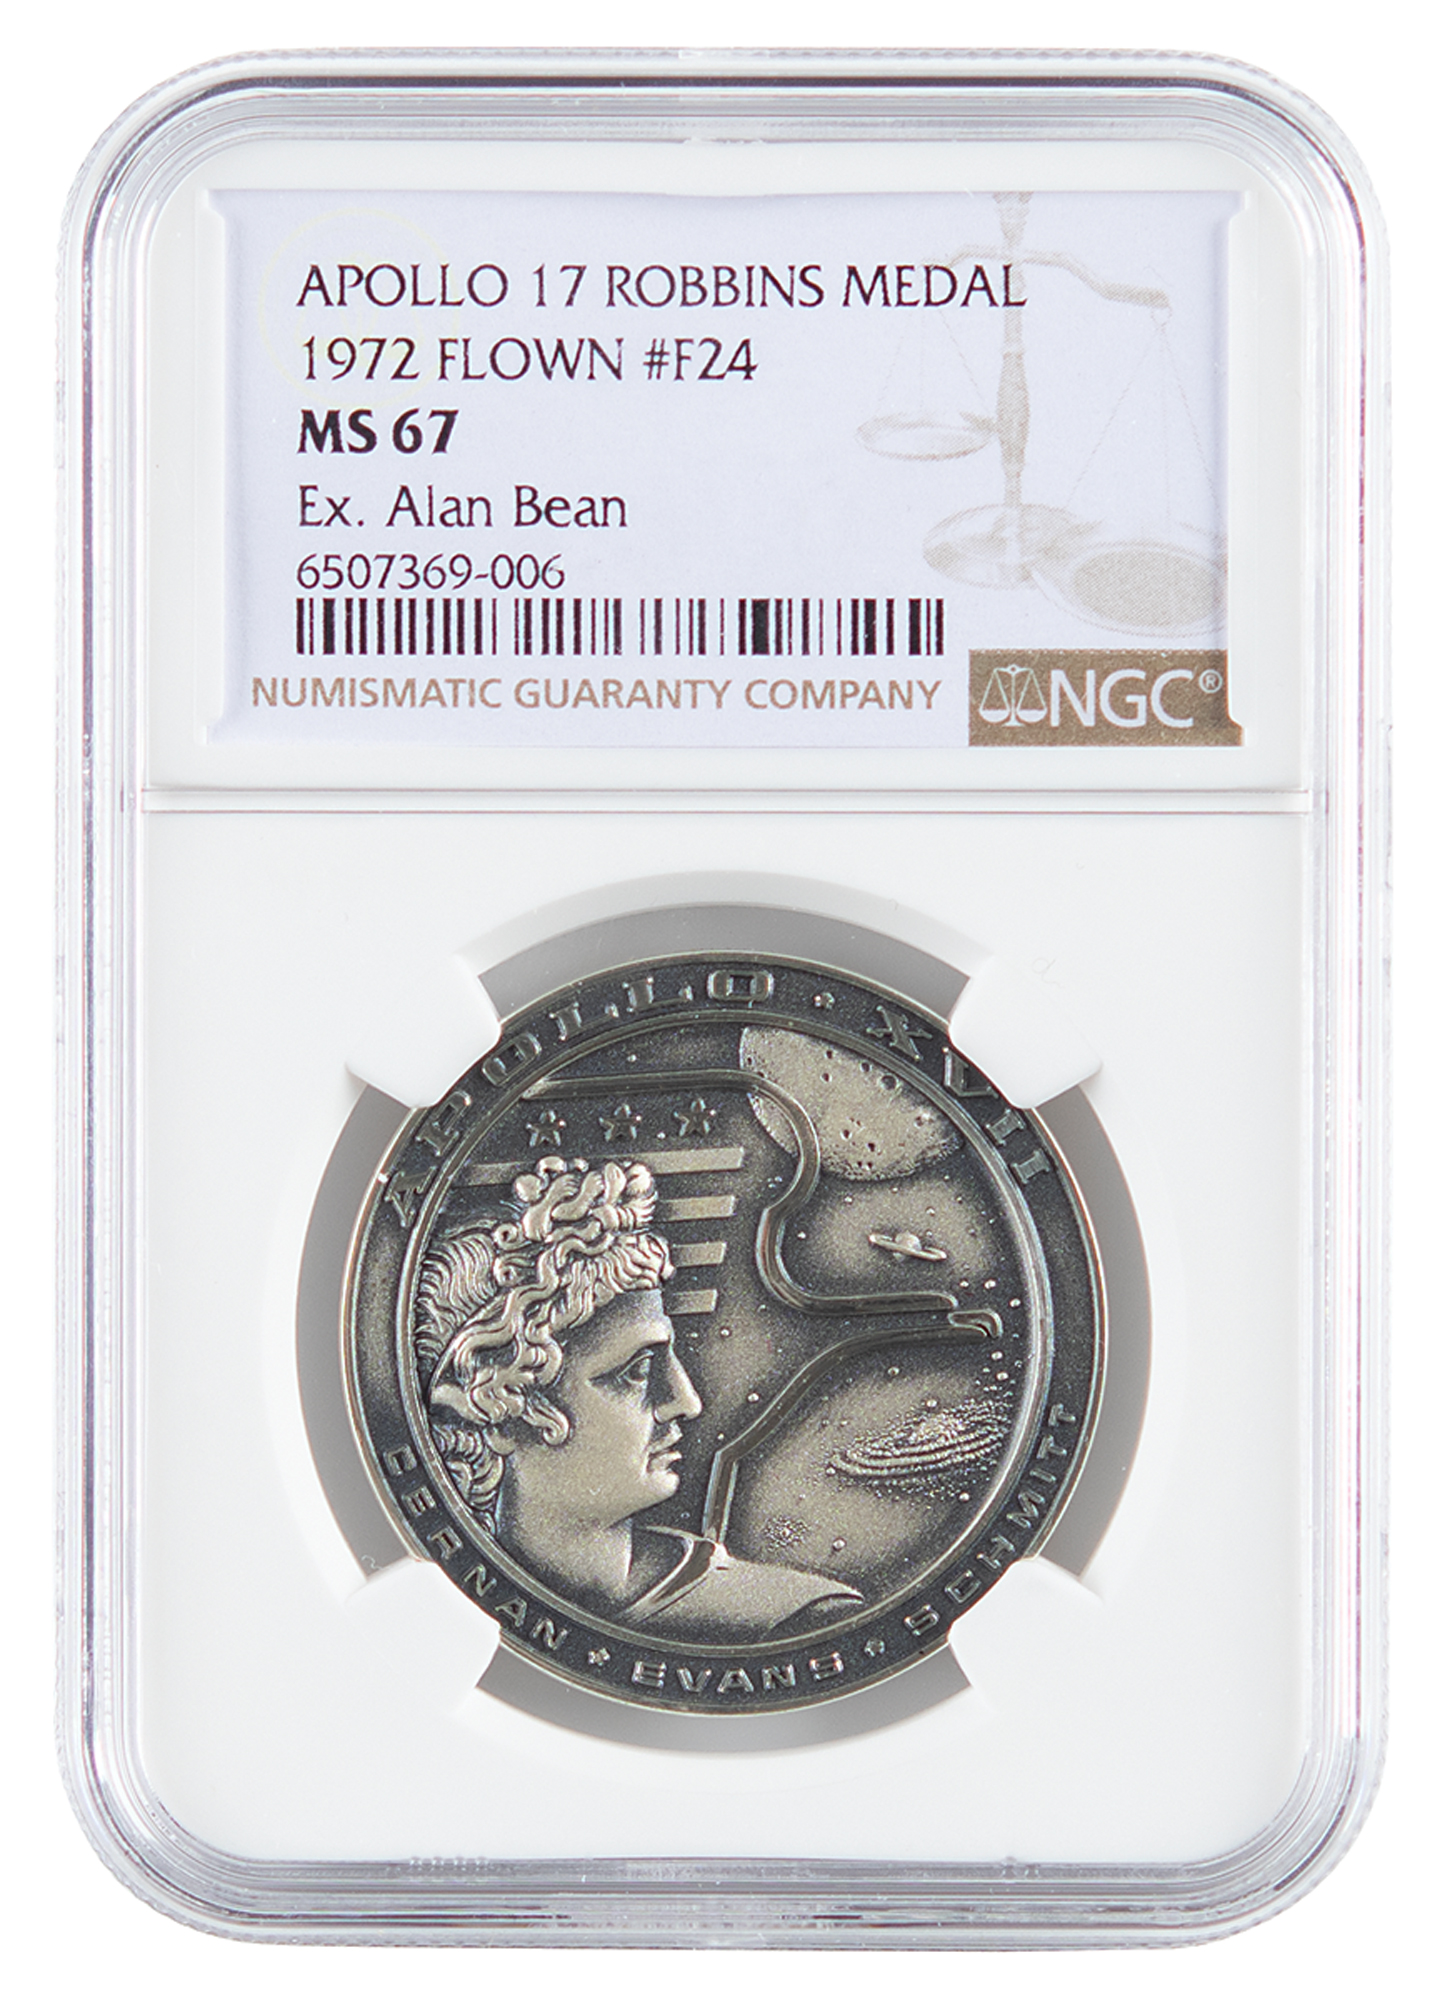 Lot #233 Alan Bean's Apollo 17 Flown Robbins Medallion